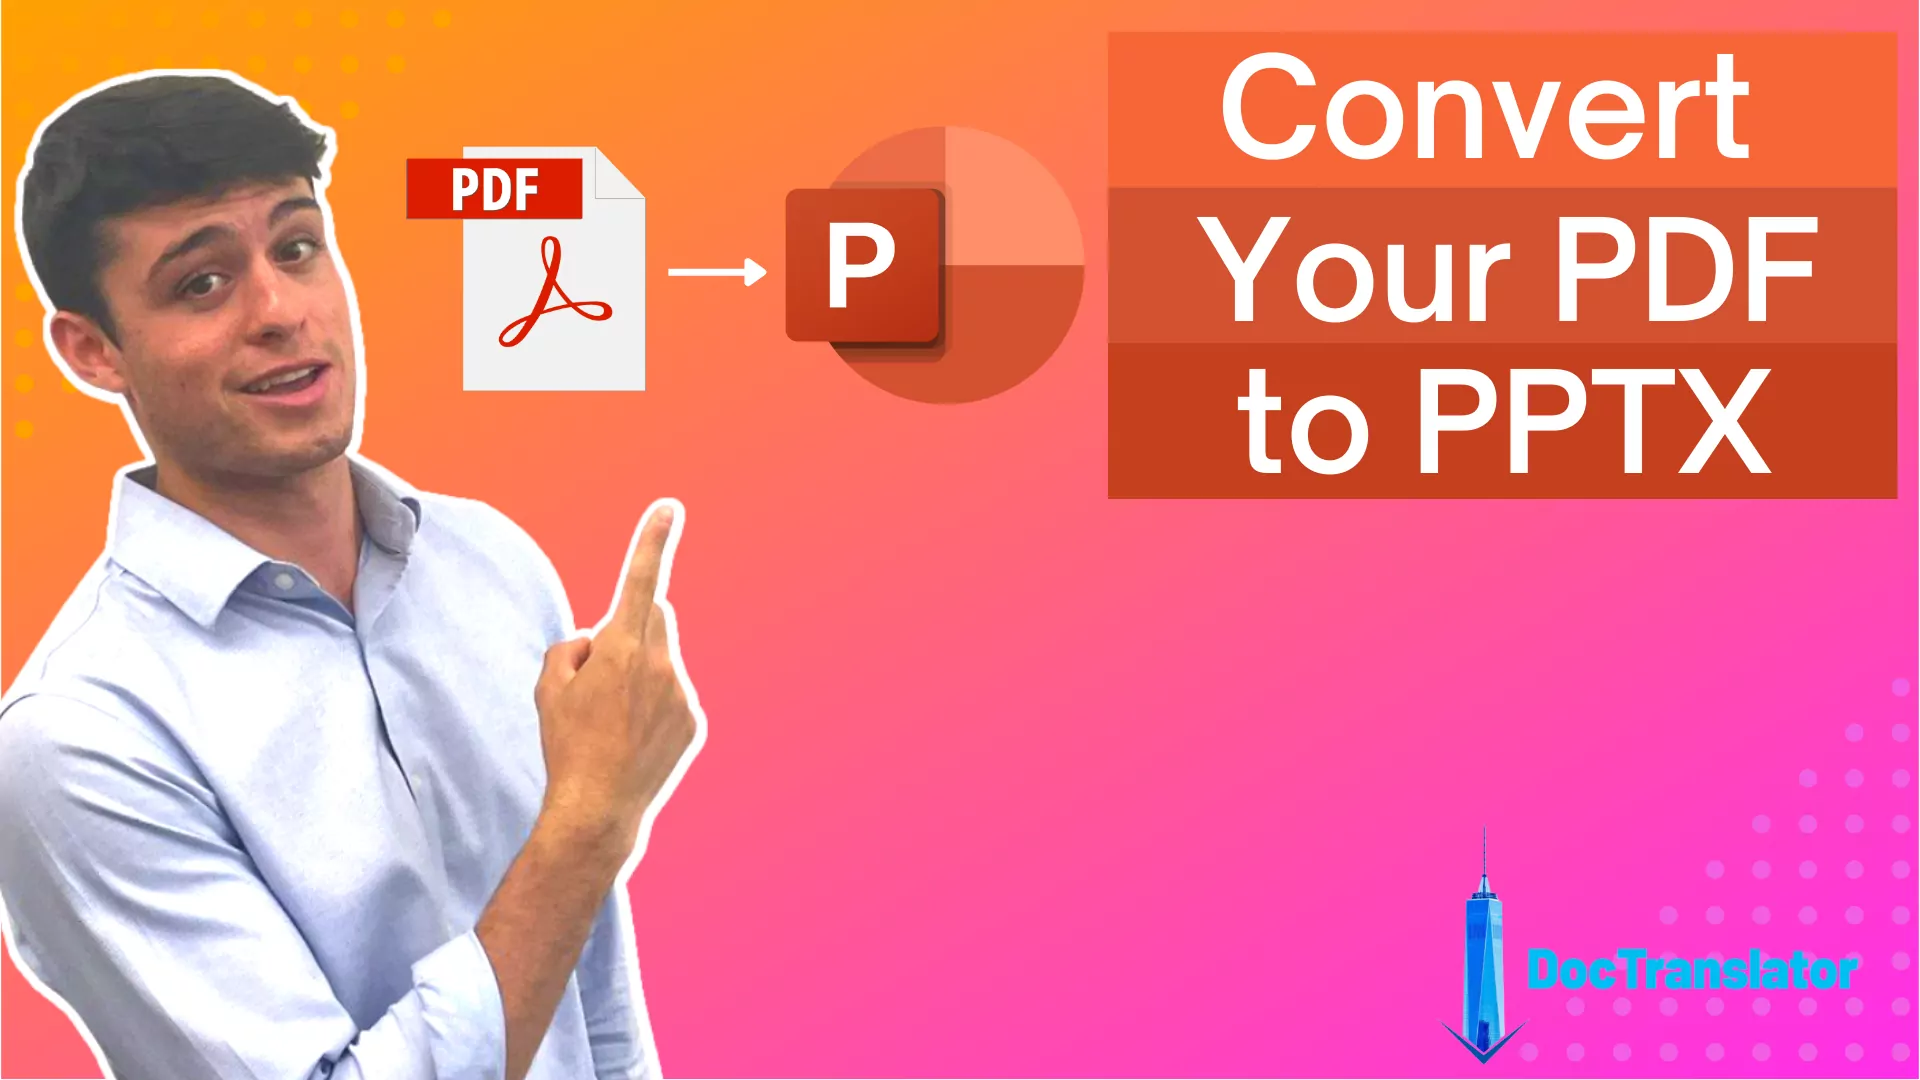 Chuyển đổi PPTX sang PDF – Công cụ trực tuyến dễ dàng